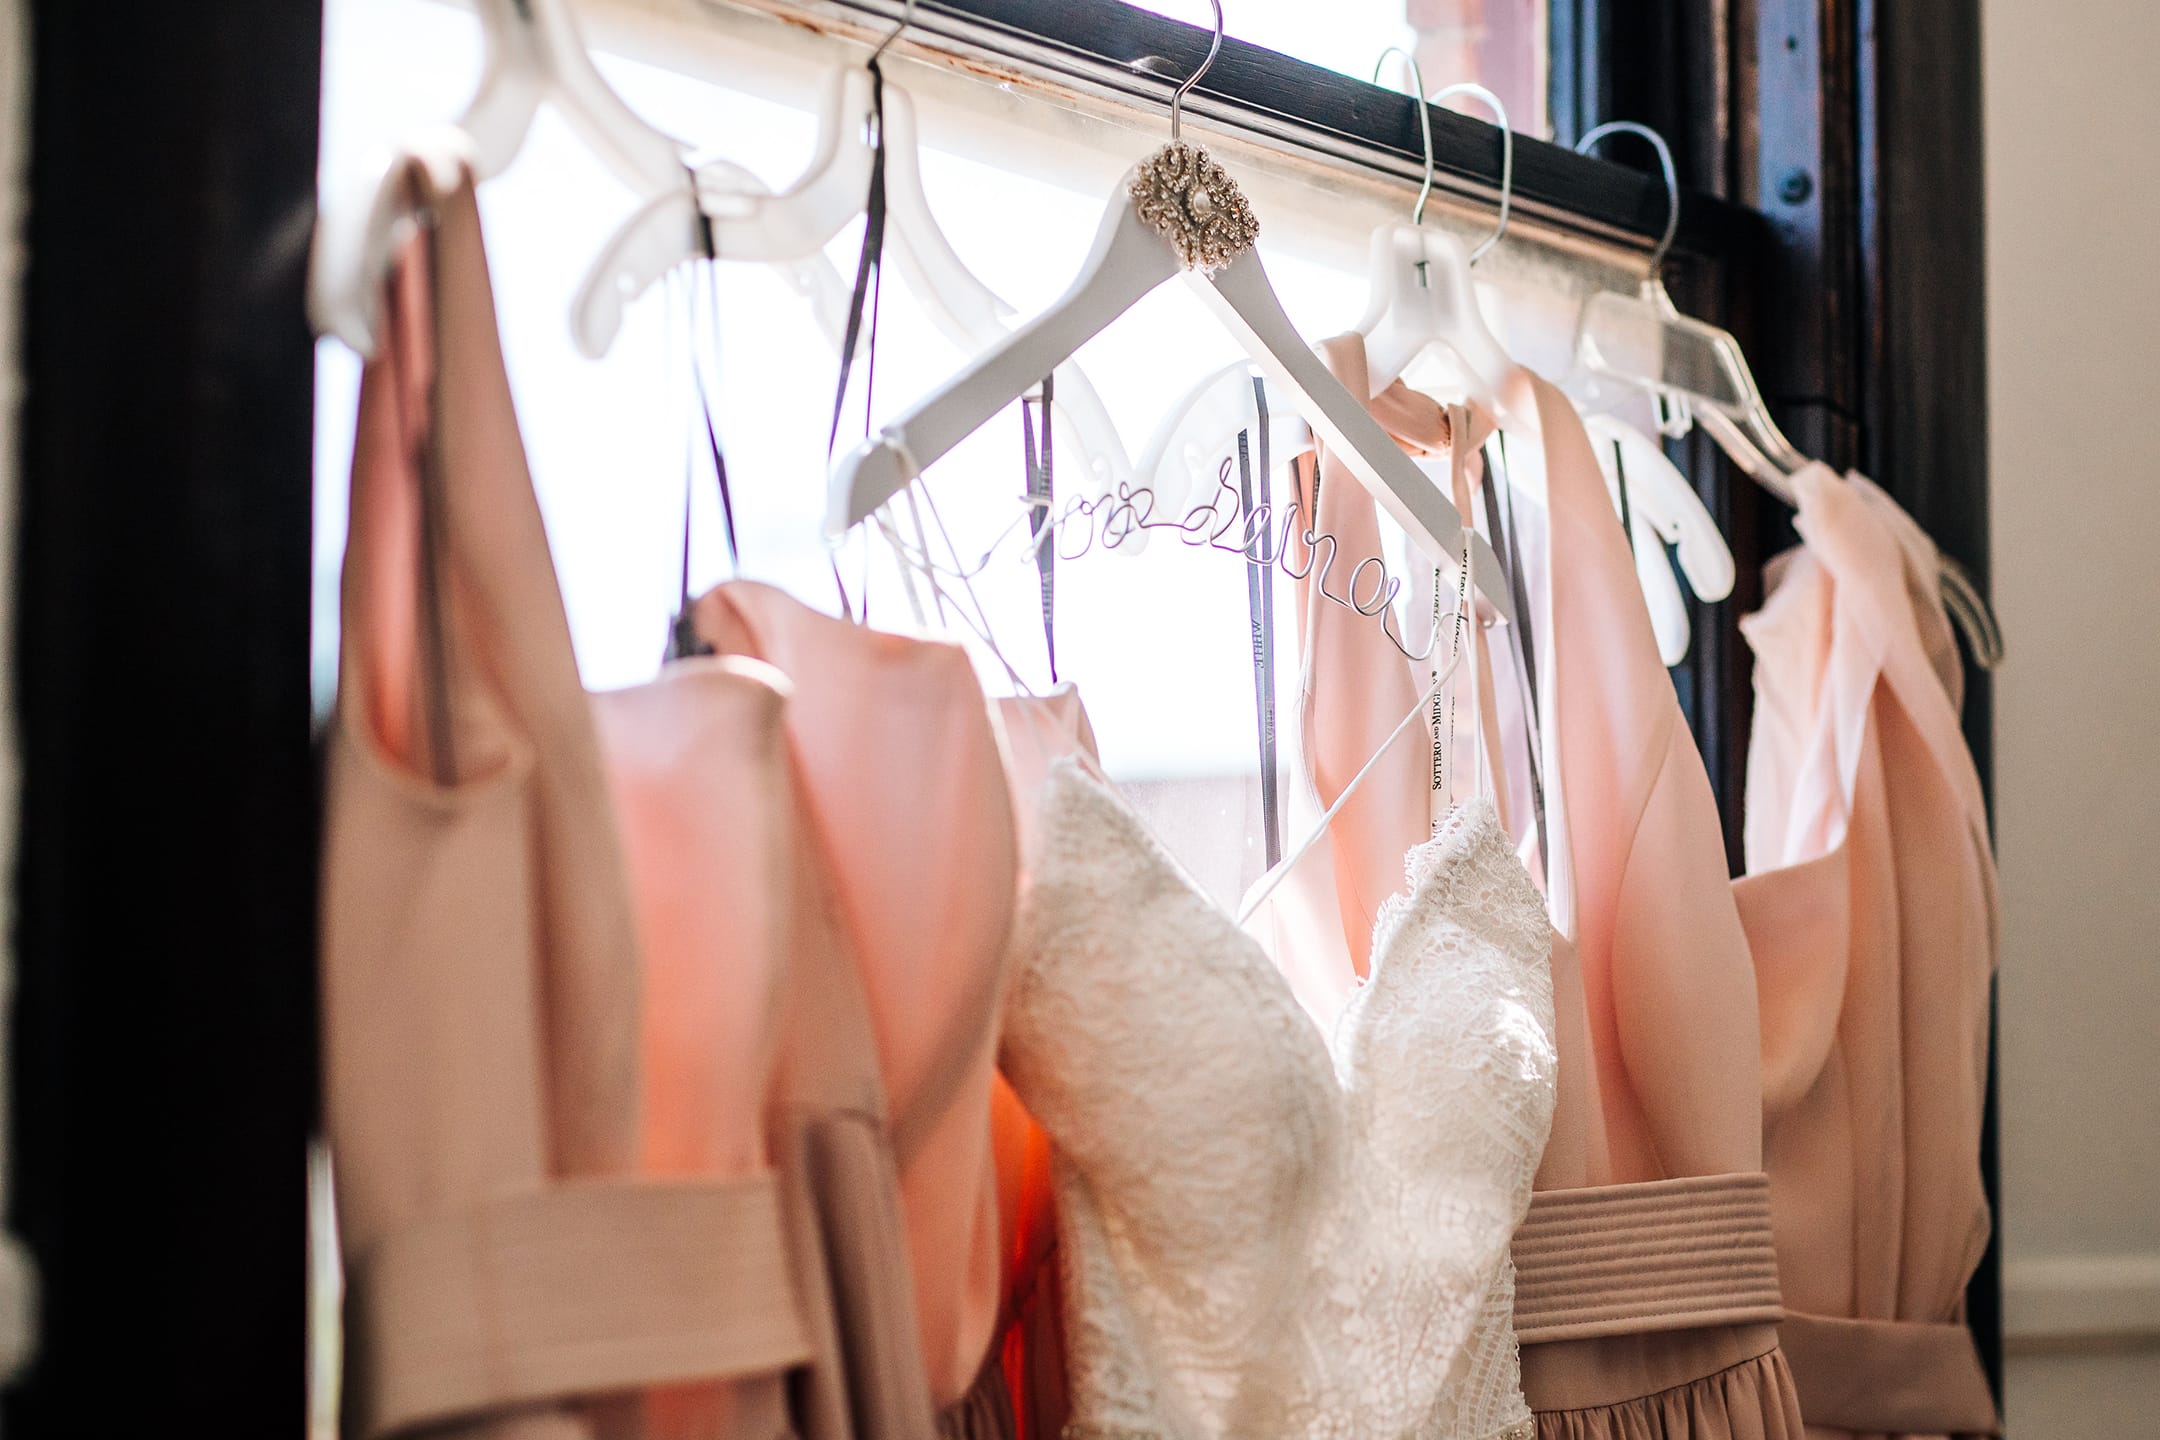 Dress Hanging on Hanger During Virtual Wedding Dress Shopping